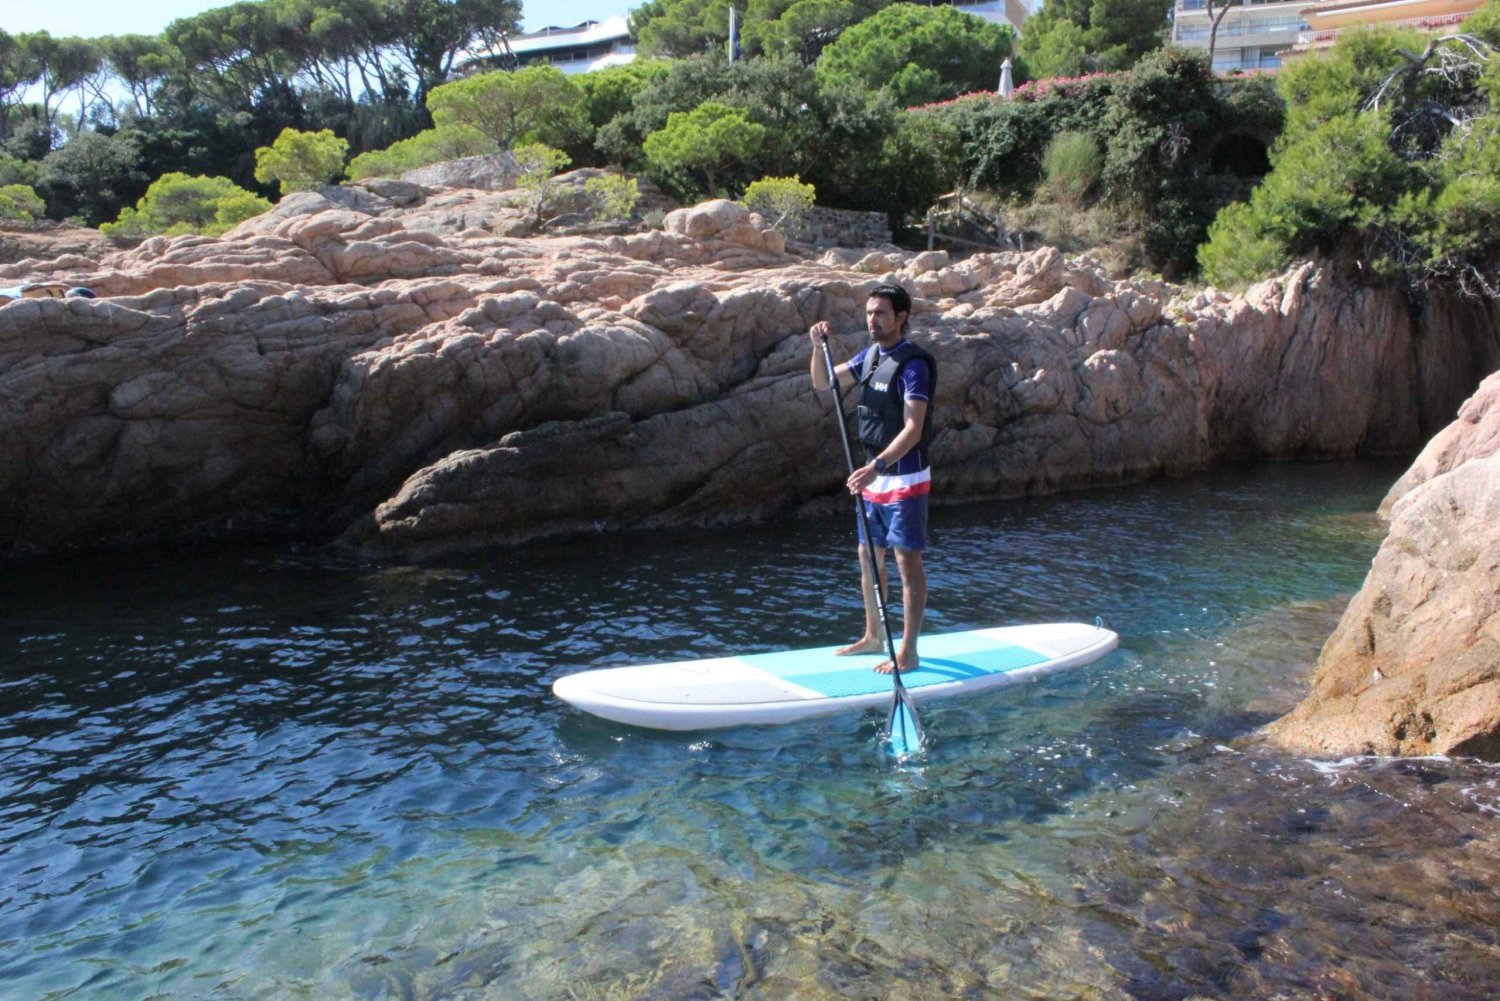 Costa Brava : Leçon et visite de Stand-Up Paddleboarding